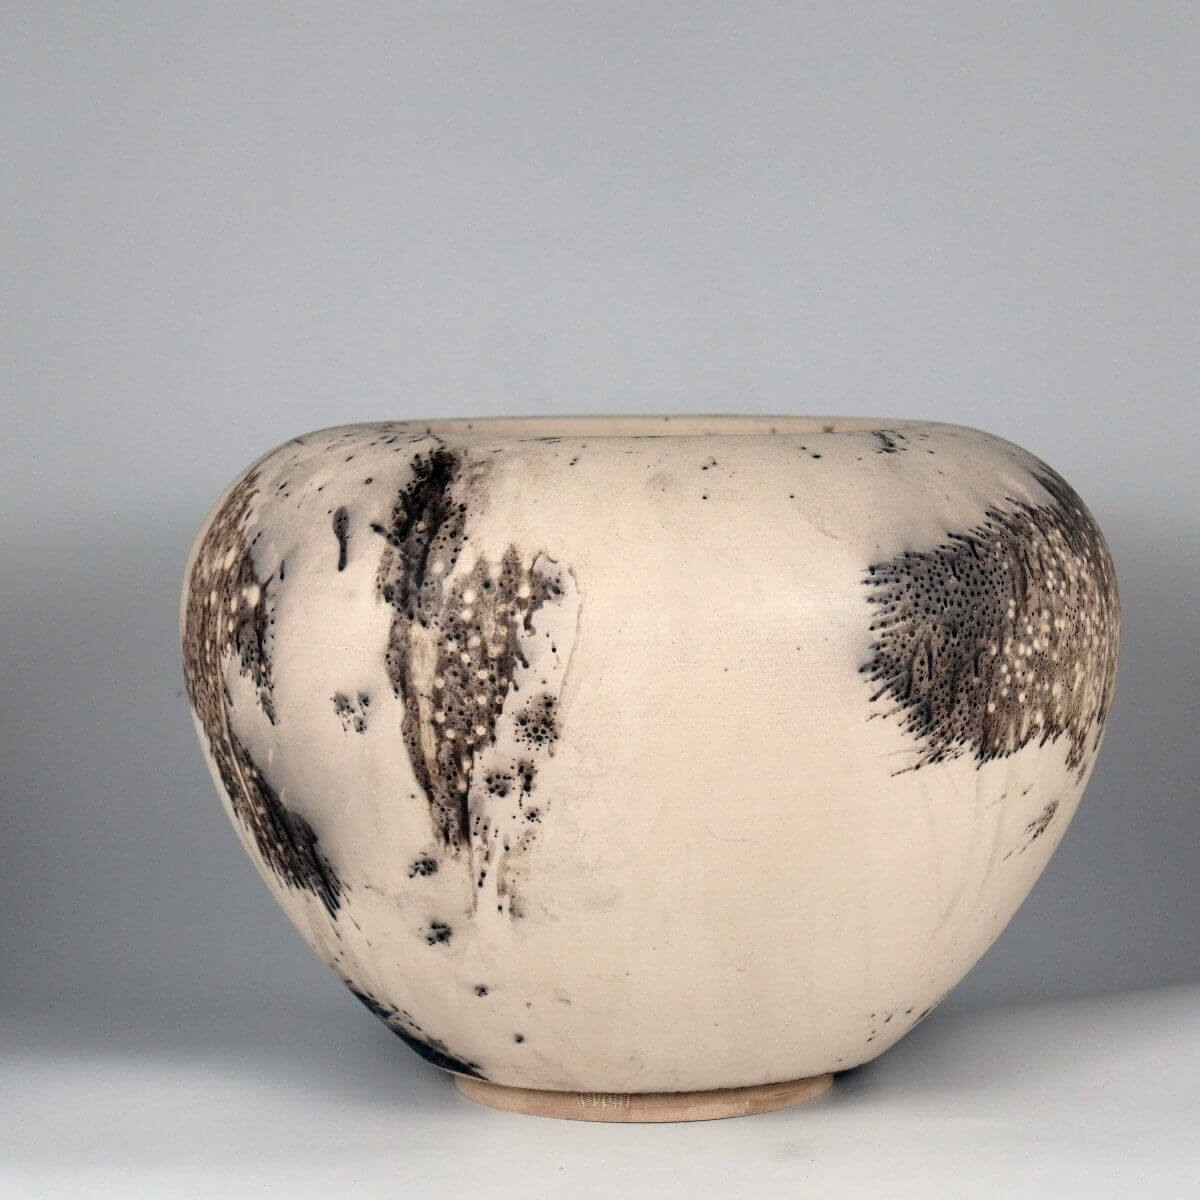 RAAQUU Large Tsubomi Ceramic Vase Obvara S/N0000680 13.5" Wide Raku Pottery - RAAQUU